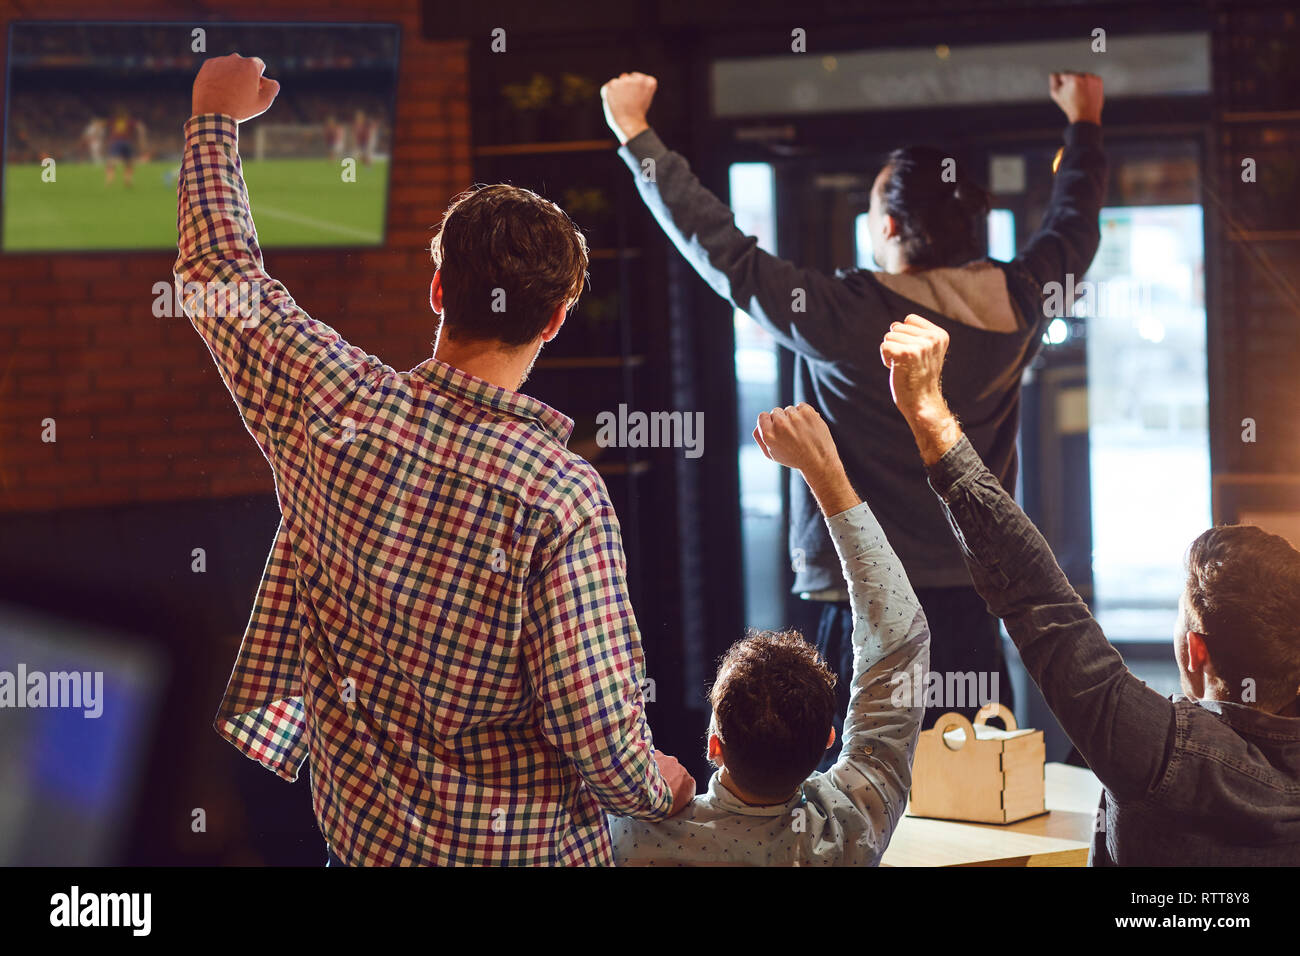 Les jeunes regarder le football à la télévision dans le bar. Banque D'Images